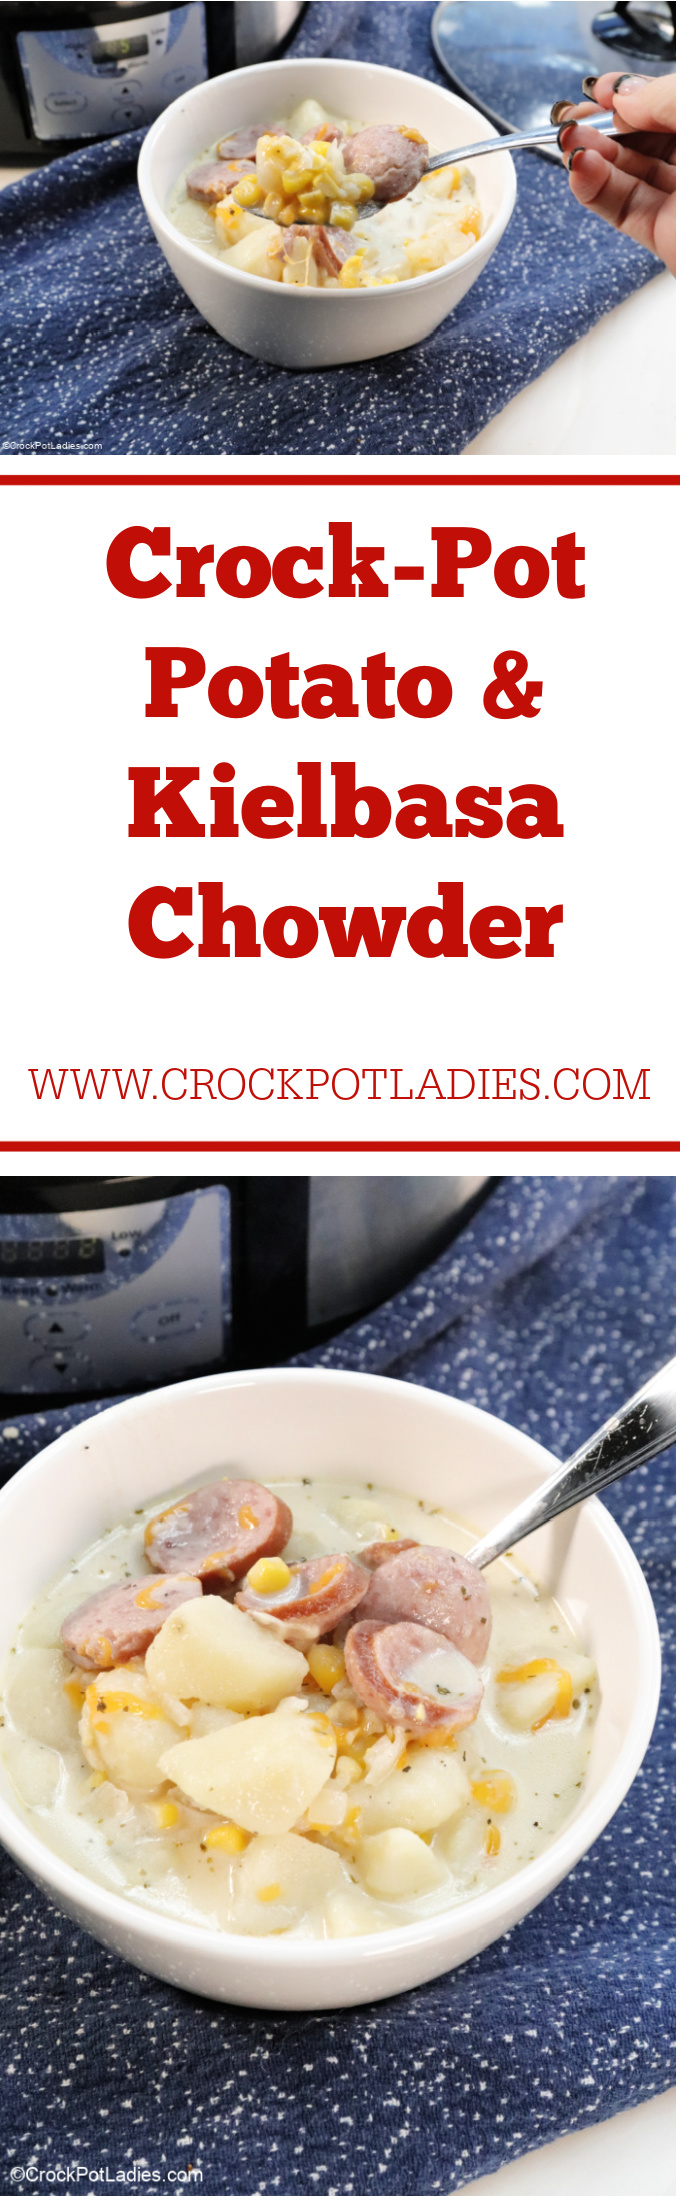 Crock-Pot Potato & Kielbasa Chowder